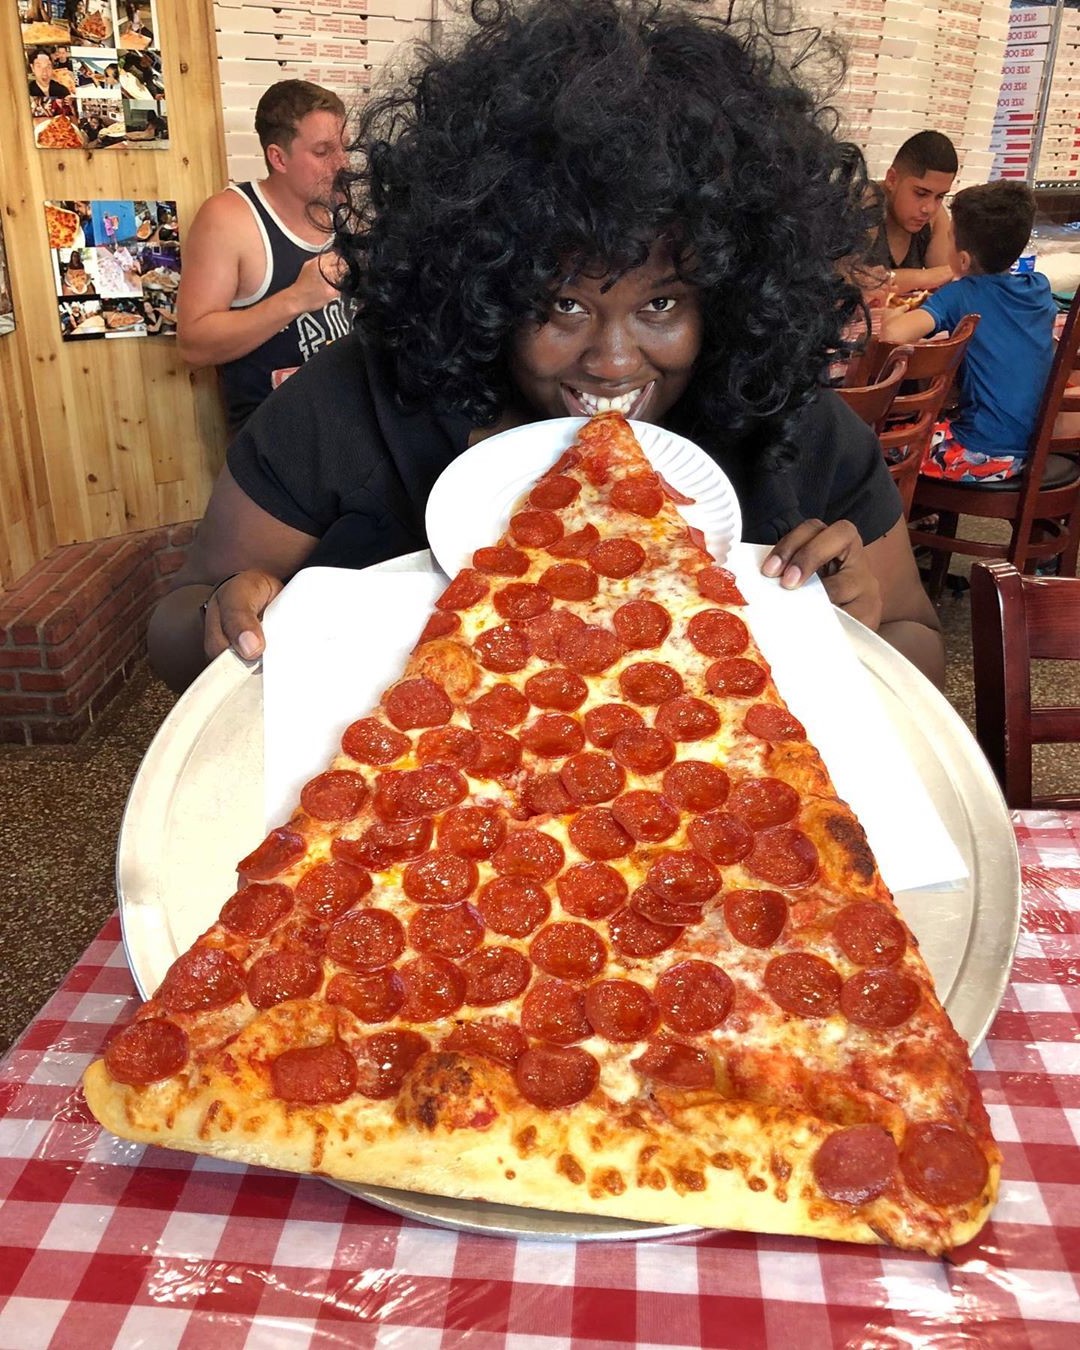 Porciones de pizza XXL |  nueva tendencia gastronómica es una porción de pizza gigante: la más grande que hayas visto |  Su belleza